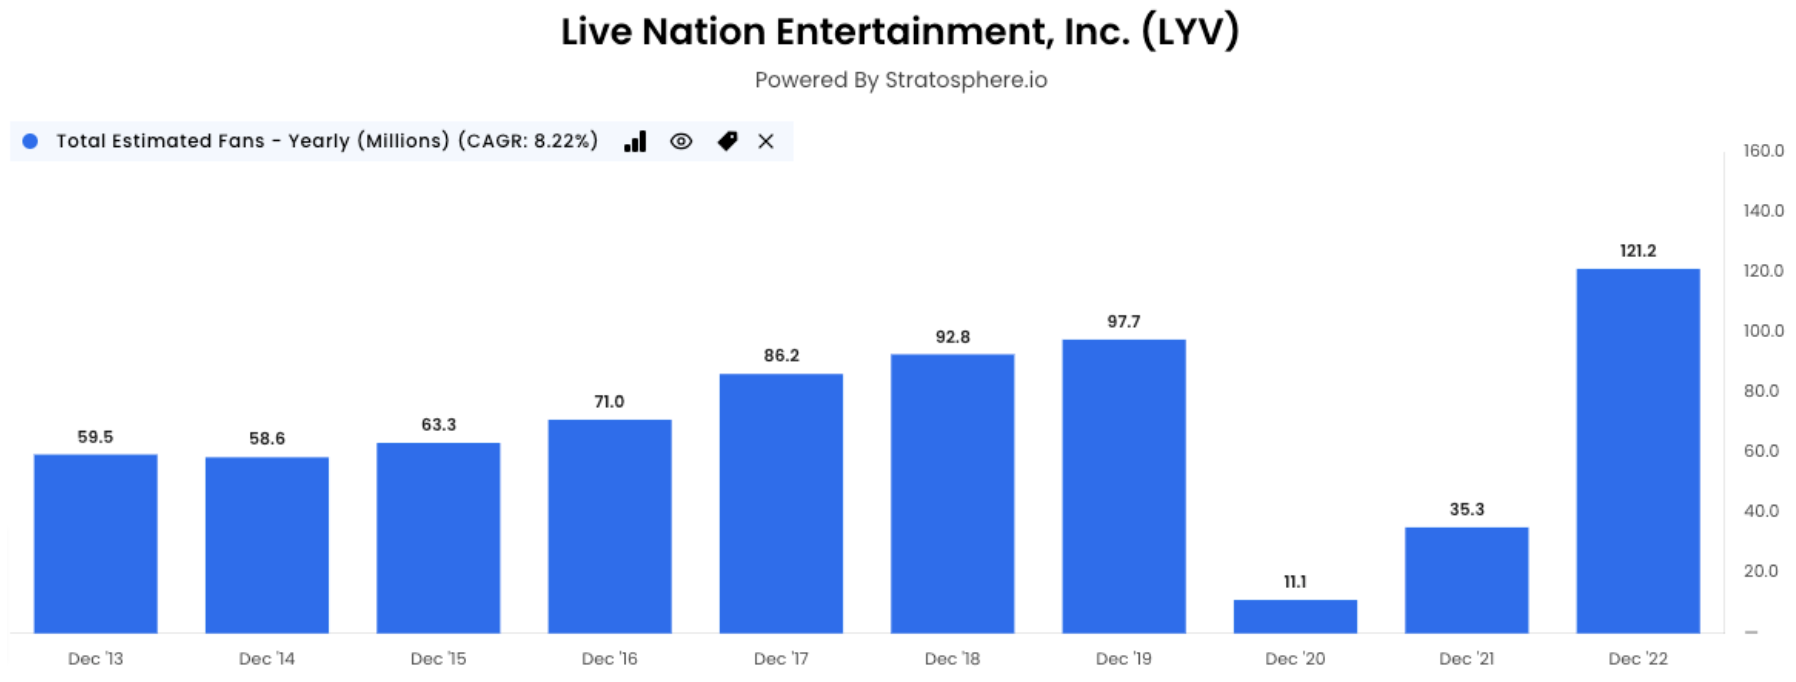 Live Nation Entertainment Inc. total estimated fans graph